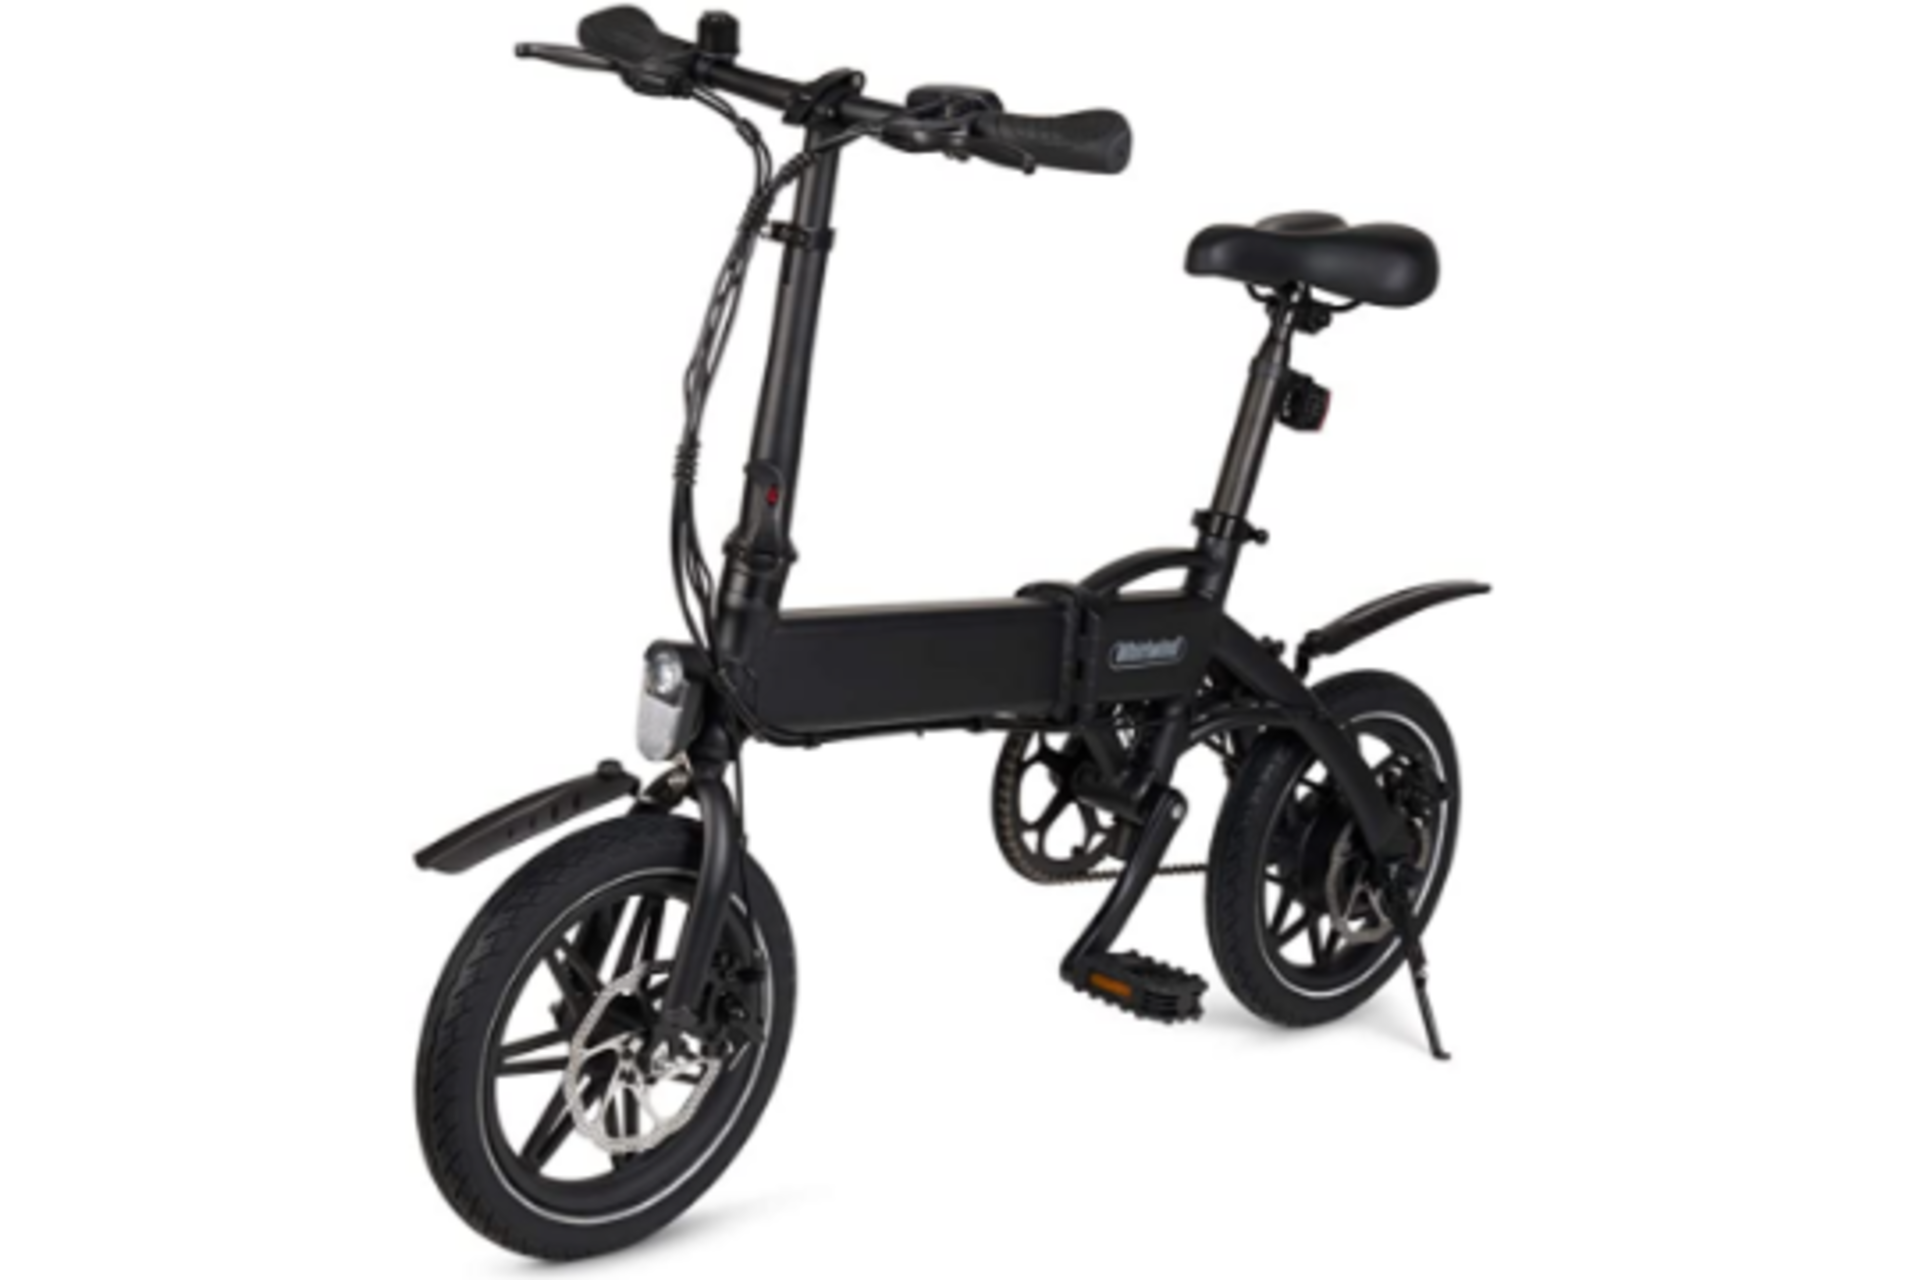 Whirlwind Electric Folding Bike E-Bike. Electric bike – The C4 electric bike makes travel easier,